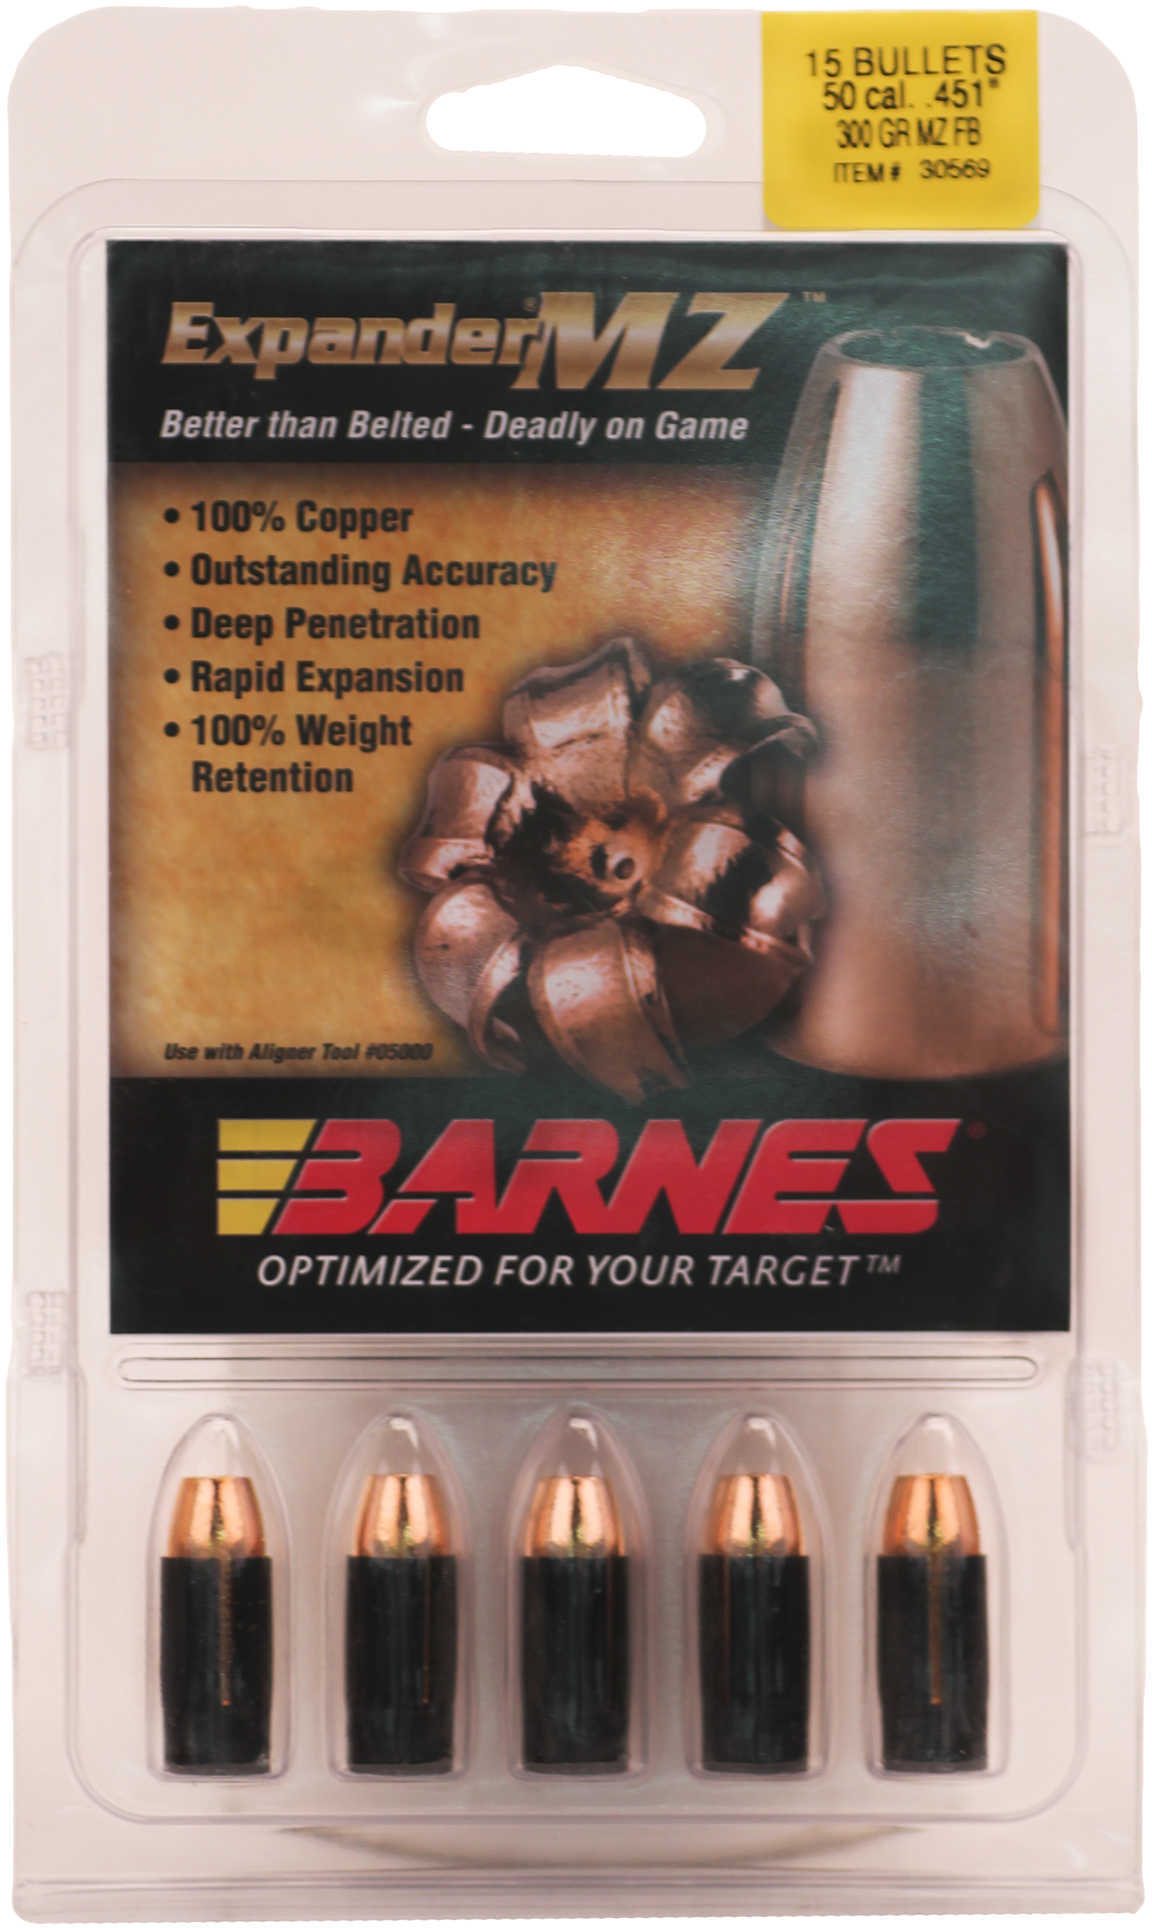 Barnes Expander MZ Muzzleloader Bullets With Sabot .50 Cal .451" 300Gr FB 15/ct